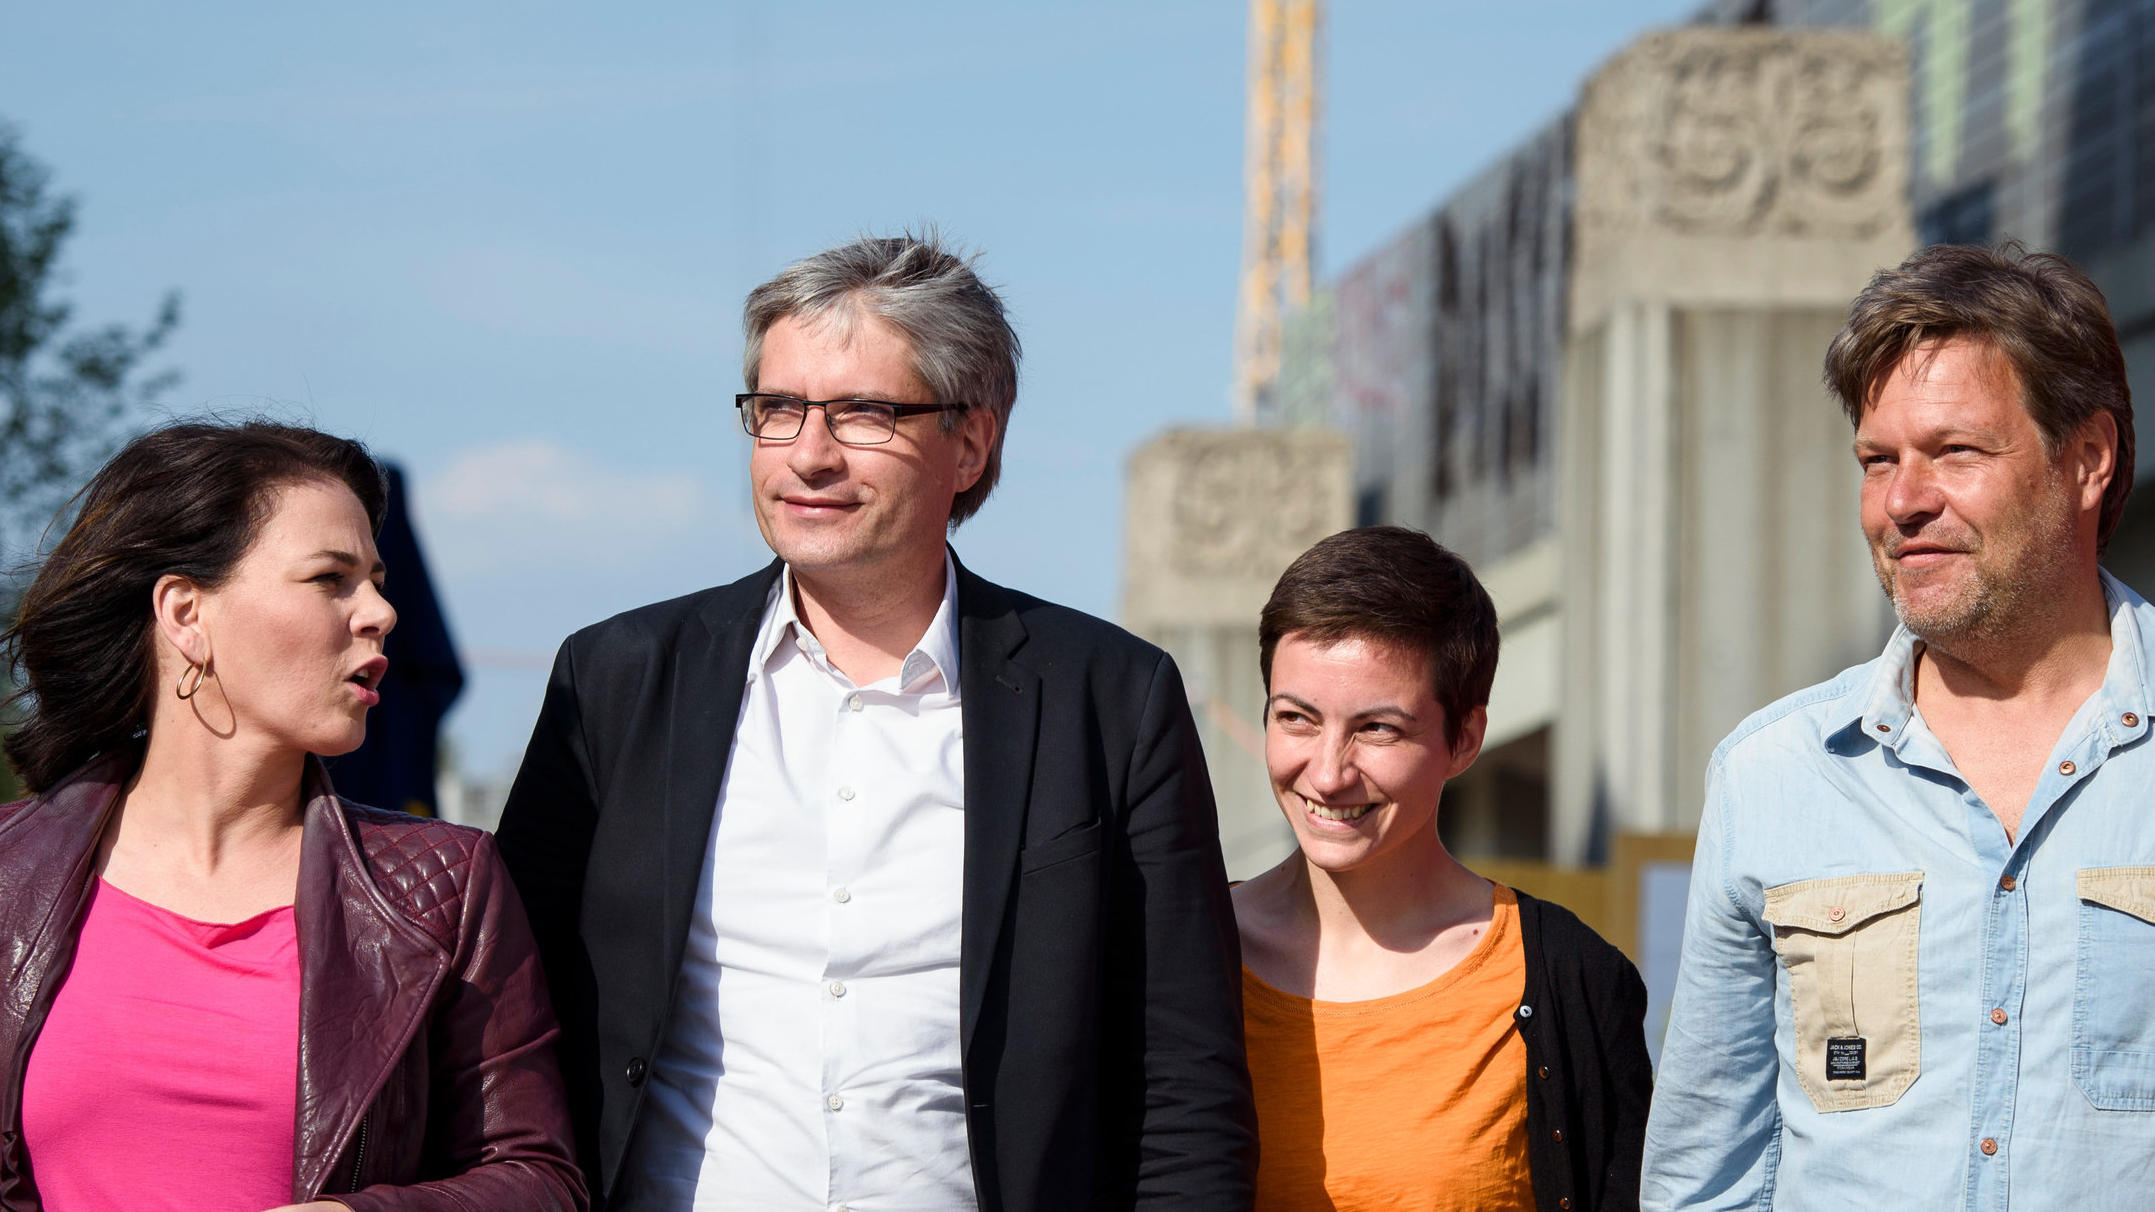 Europawahl Rtl Korrespondentin Heike Boese Checkt Die Spitzenkandidaten